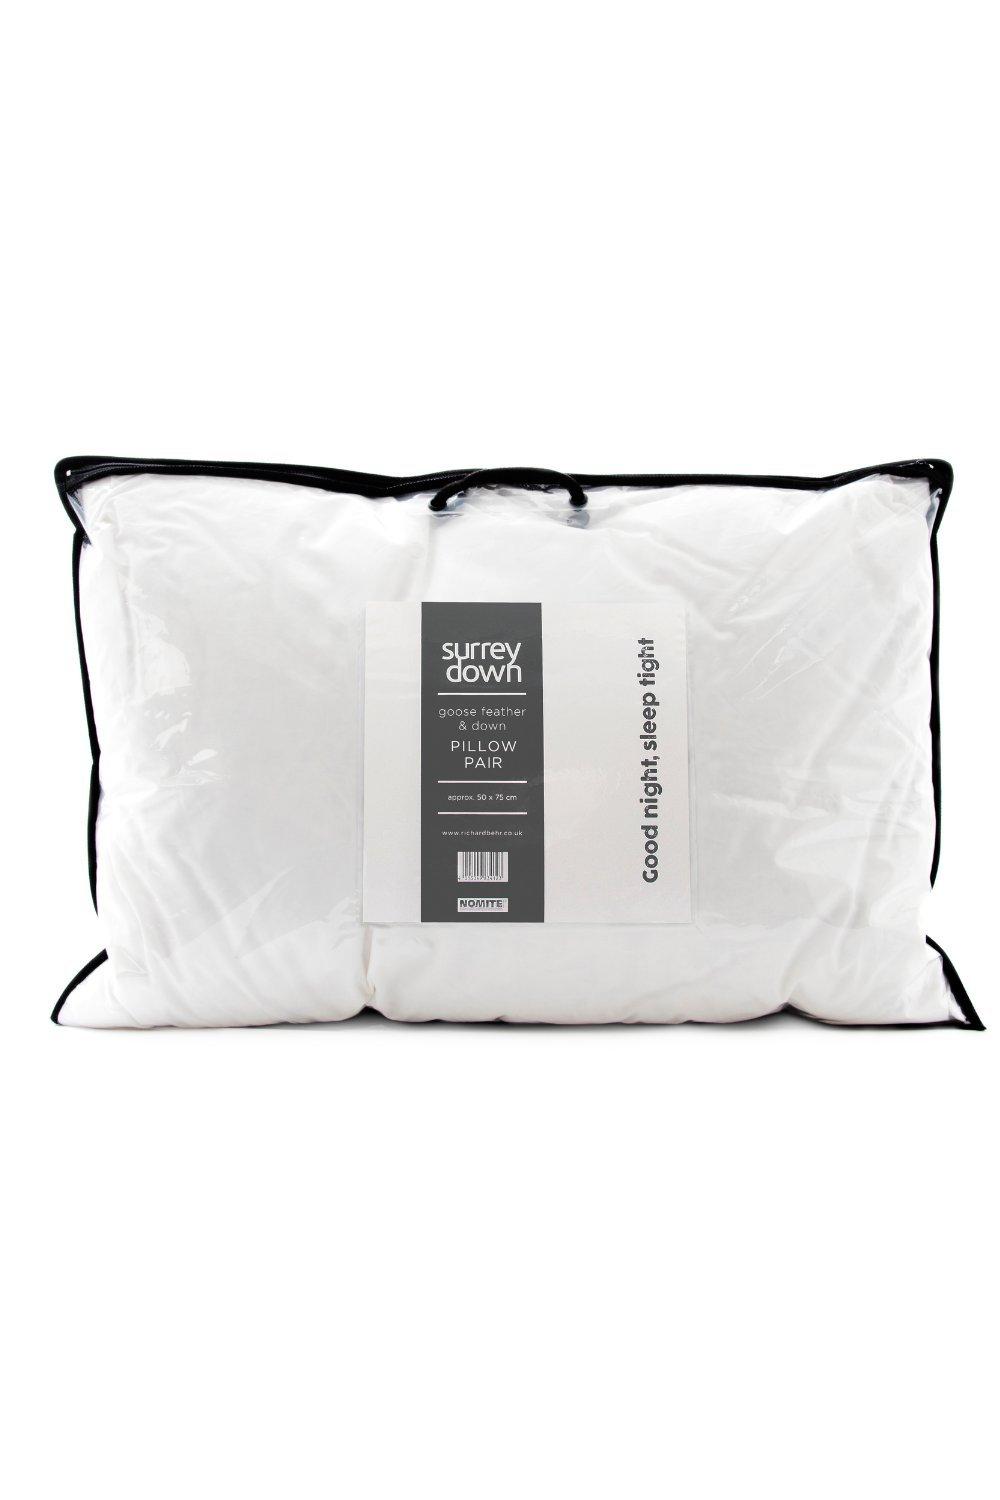 Goose Feather & Down Medium Firmness Pillow (2 Pack)